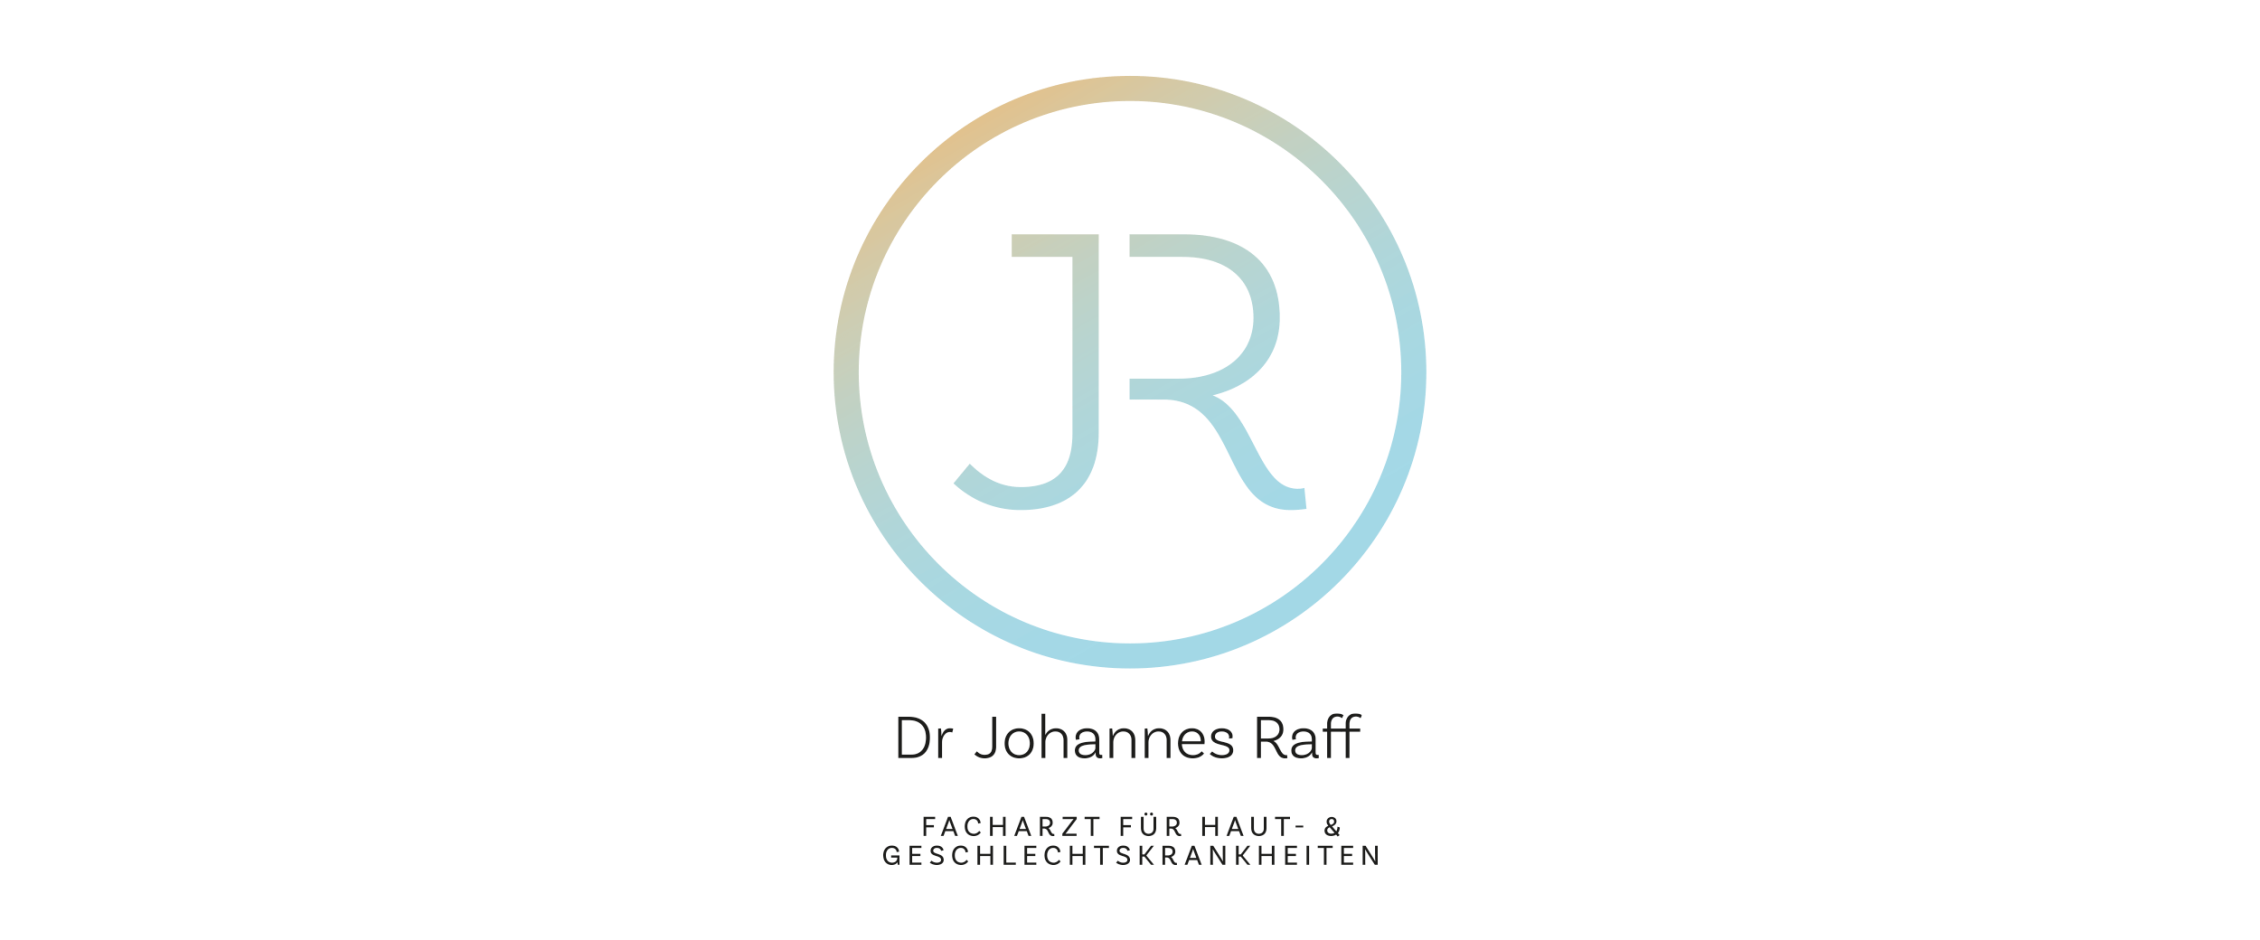 Dr. Johannes Raff, Facharzt für Haut- und Geschlechtskrankheiten, Wien